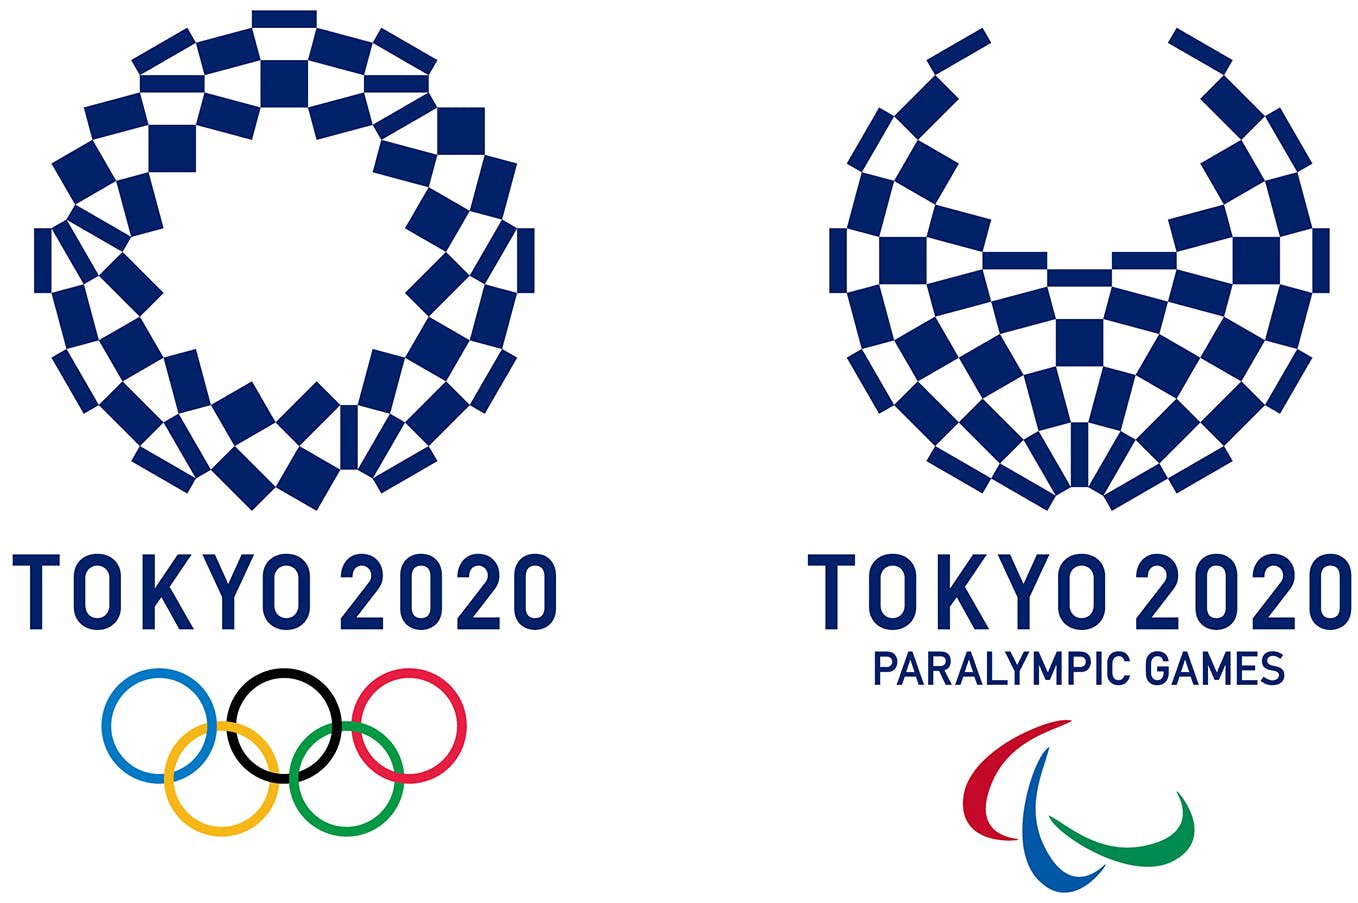 2020 Tokyo Olympics & 2020 Tokyo Paralympics